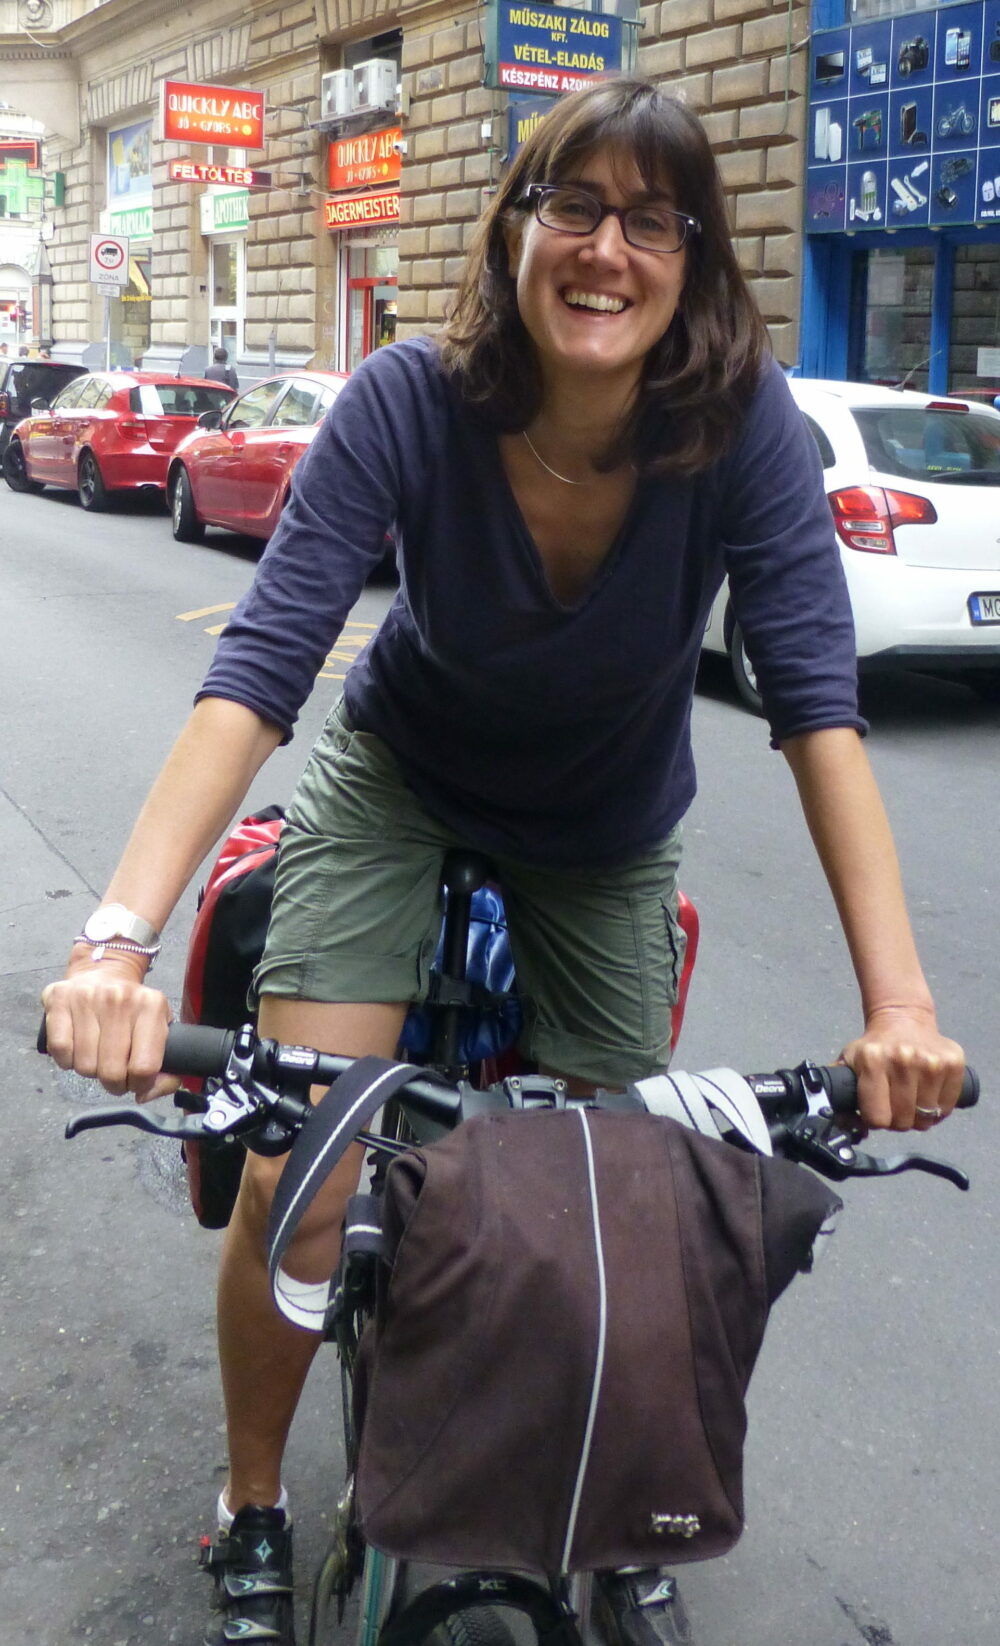 Kathryn Yates on a bike